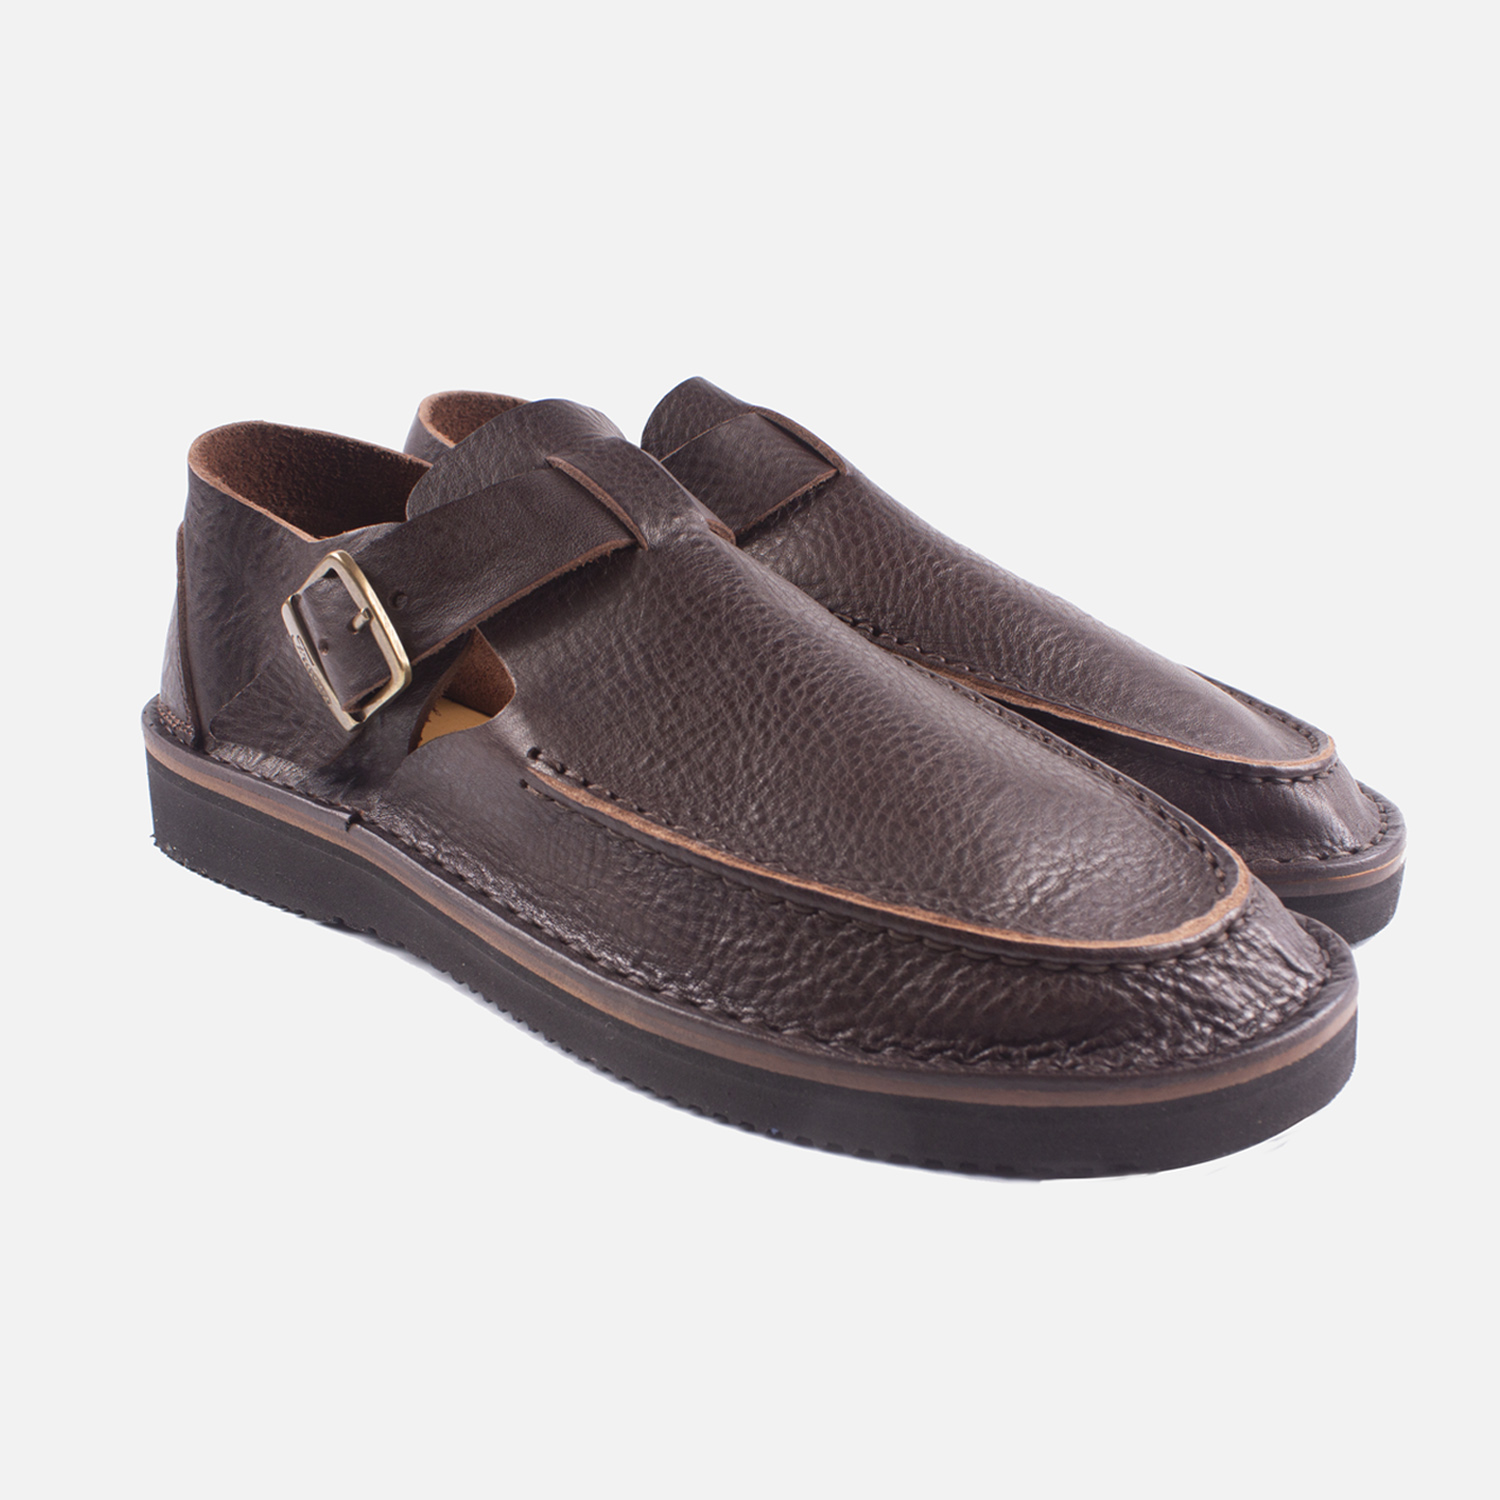 Fracap D151 Sandals - Nebraska Moro